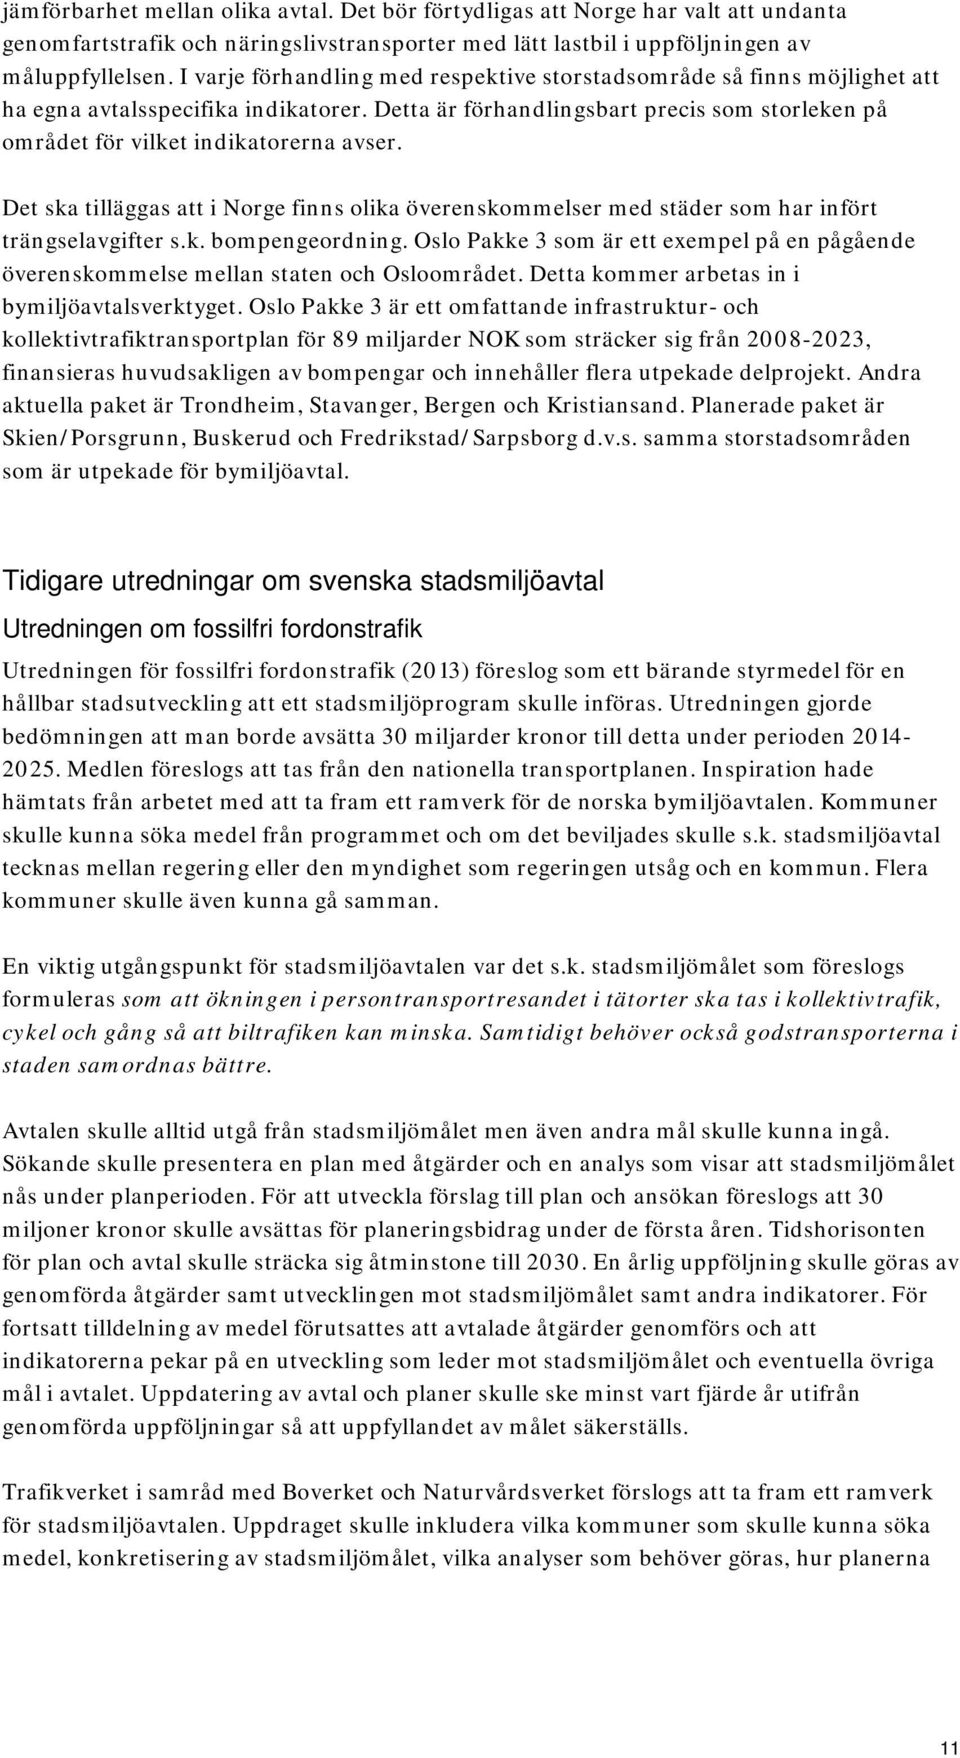 Det ska tilläggas att i Norge finns olika överenskommelser med städer som har infört trängselavgifter s.k. bompengeordning.